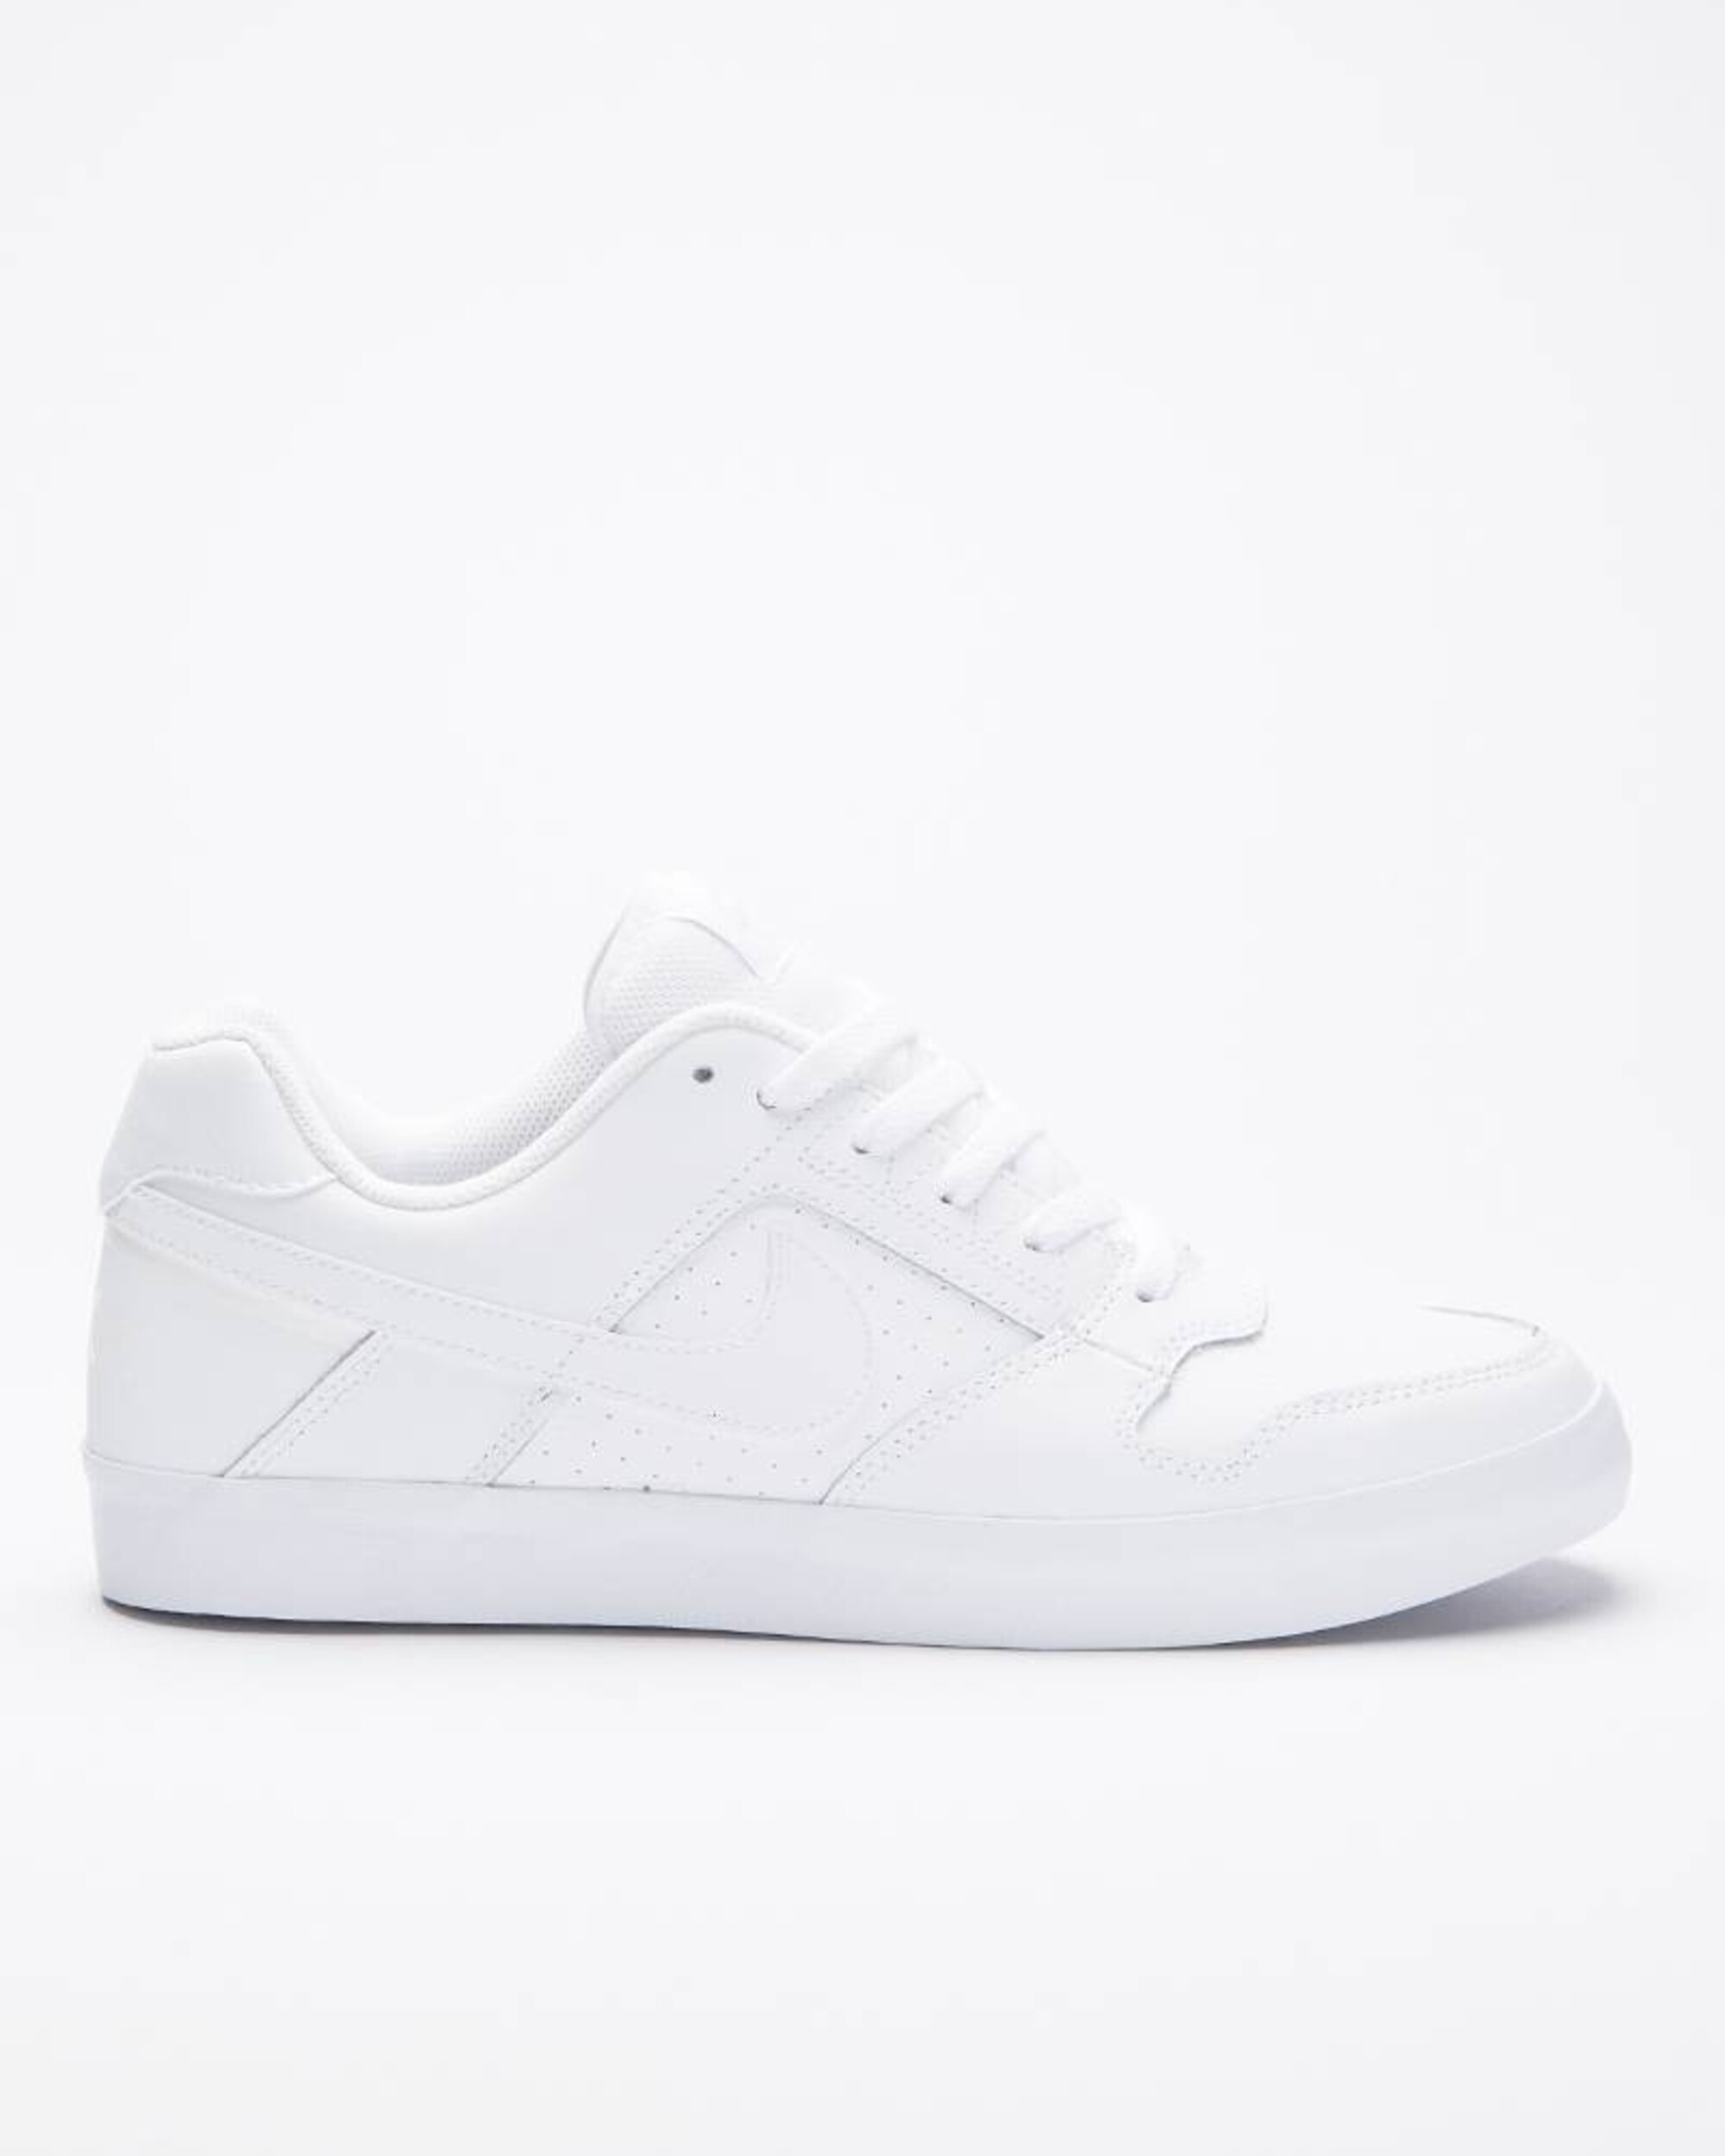 Nike SB Delta Force Vulc white/white-white